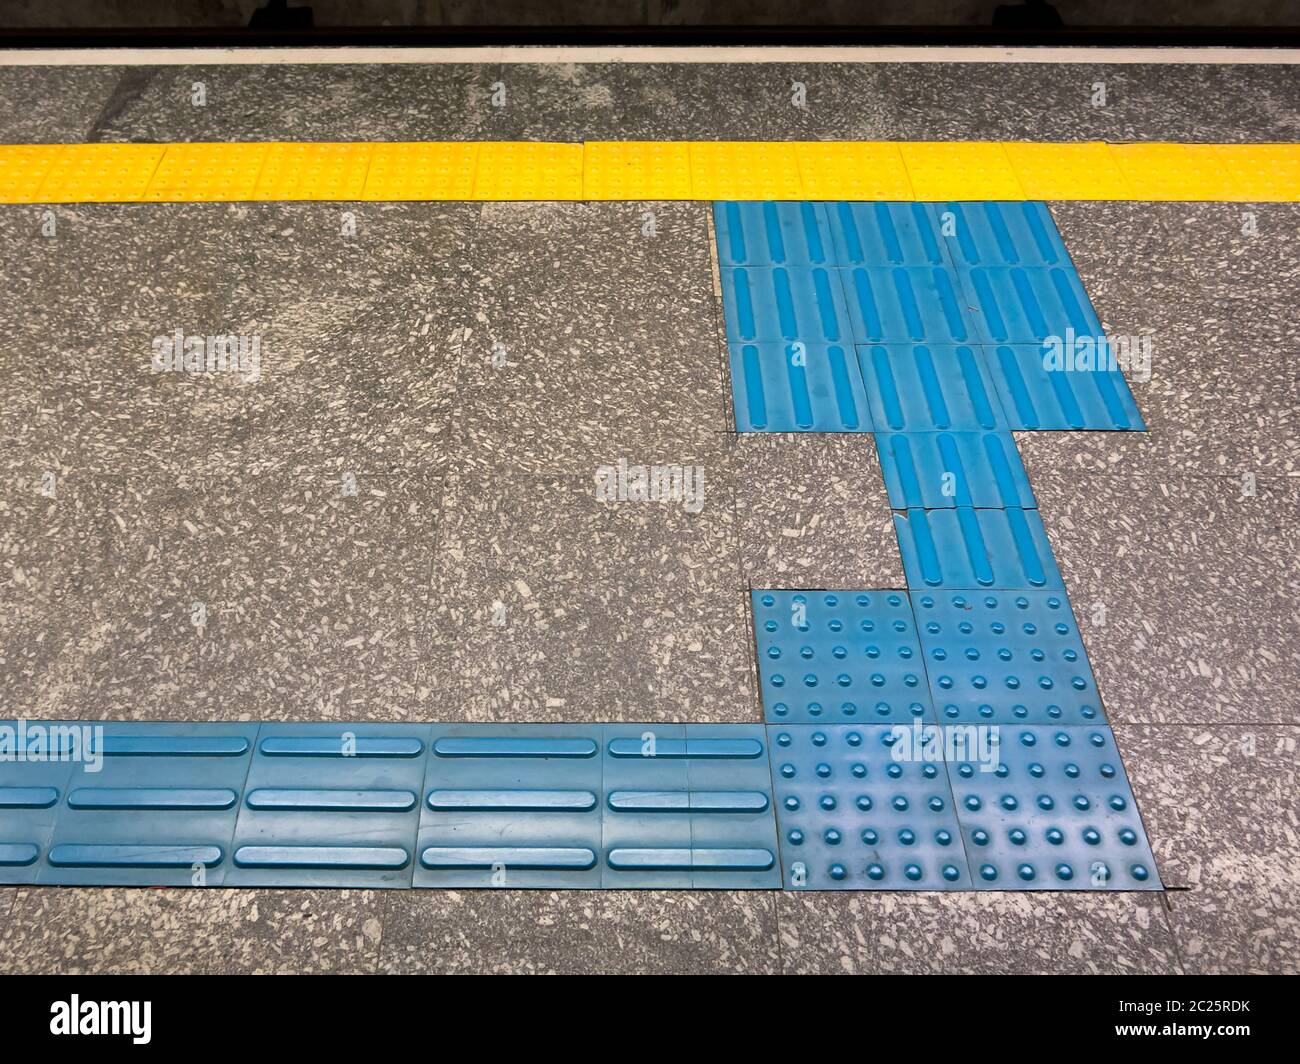 Taktile Bodenanzeigen für Sehbehinderte in brasilianischen U-Bahn-Station Stockfoto